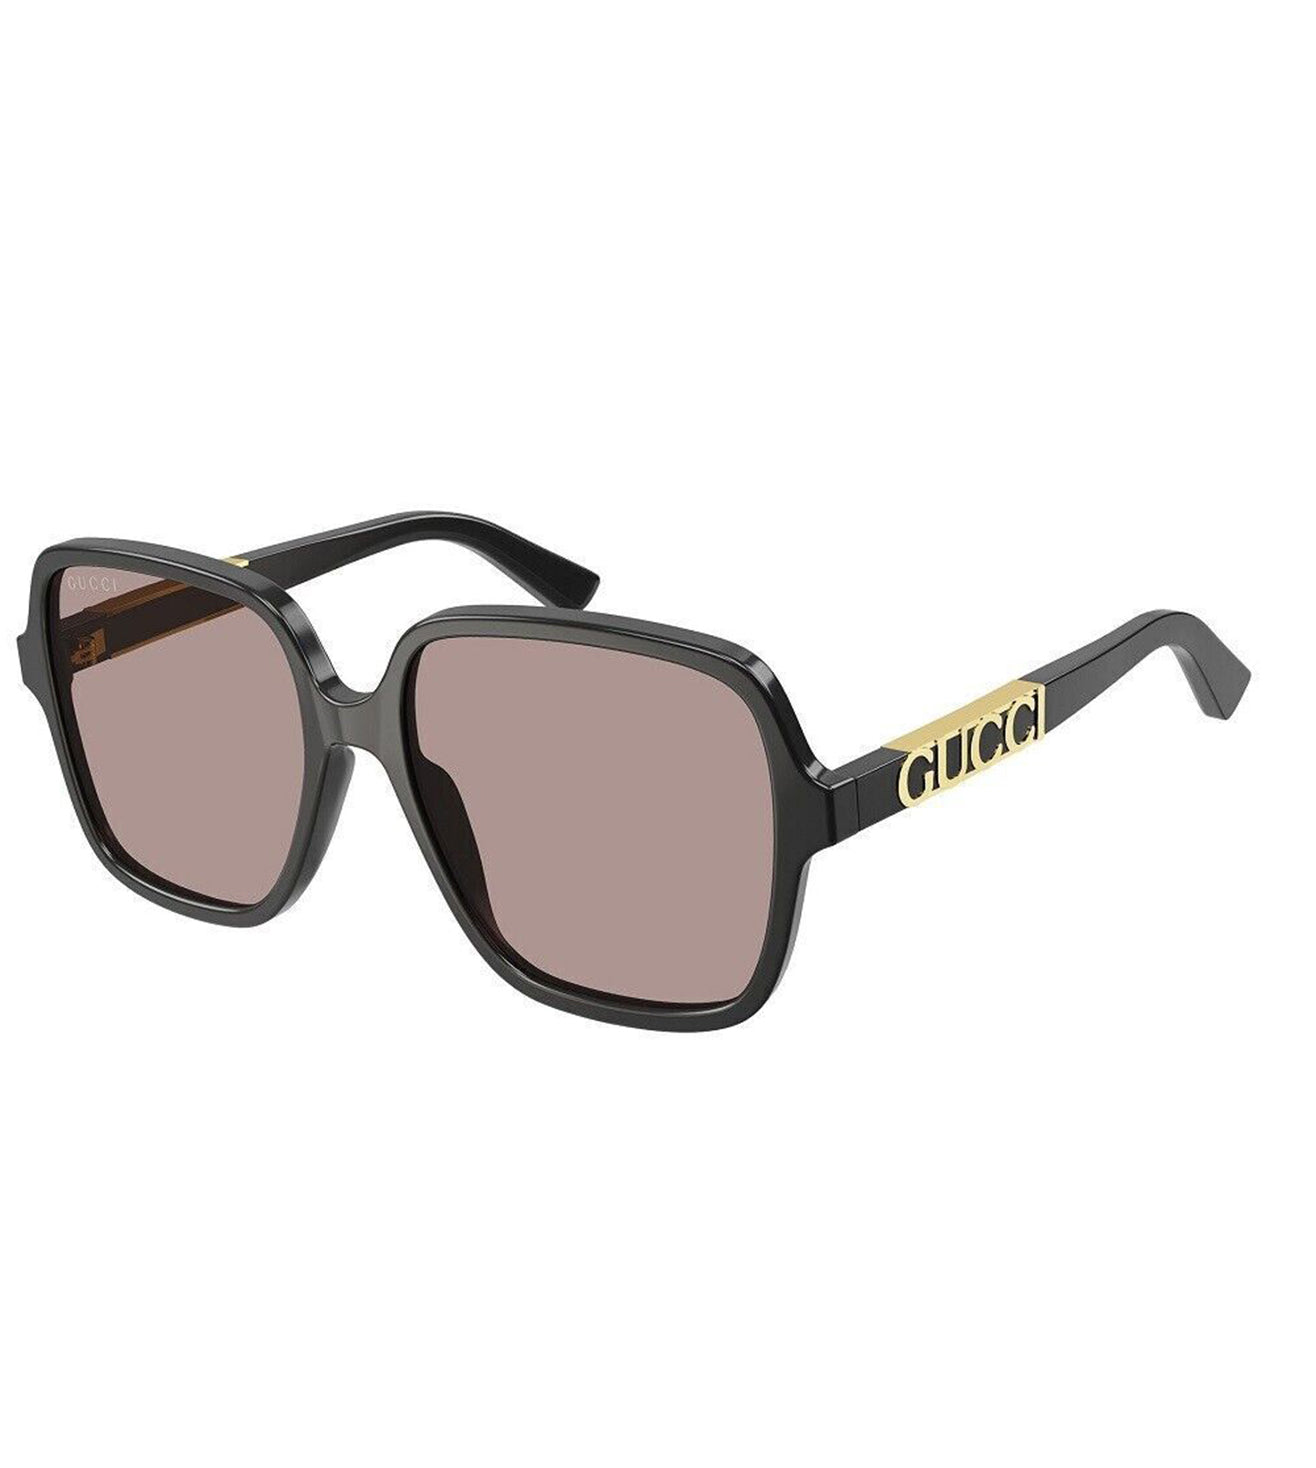 Gucci Women's Light Brown Square Sunglasses